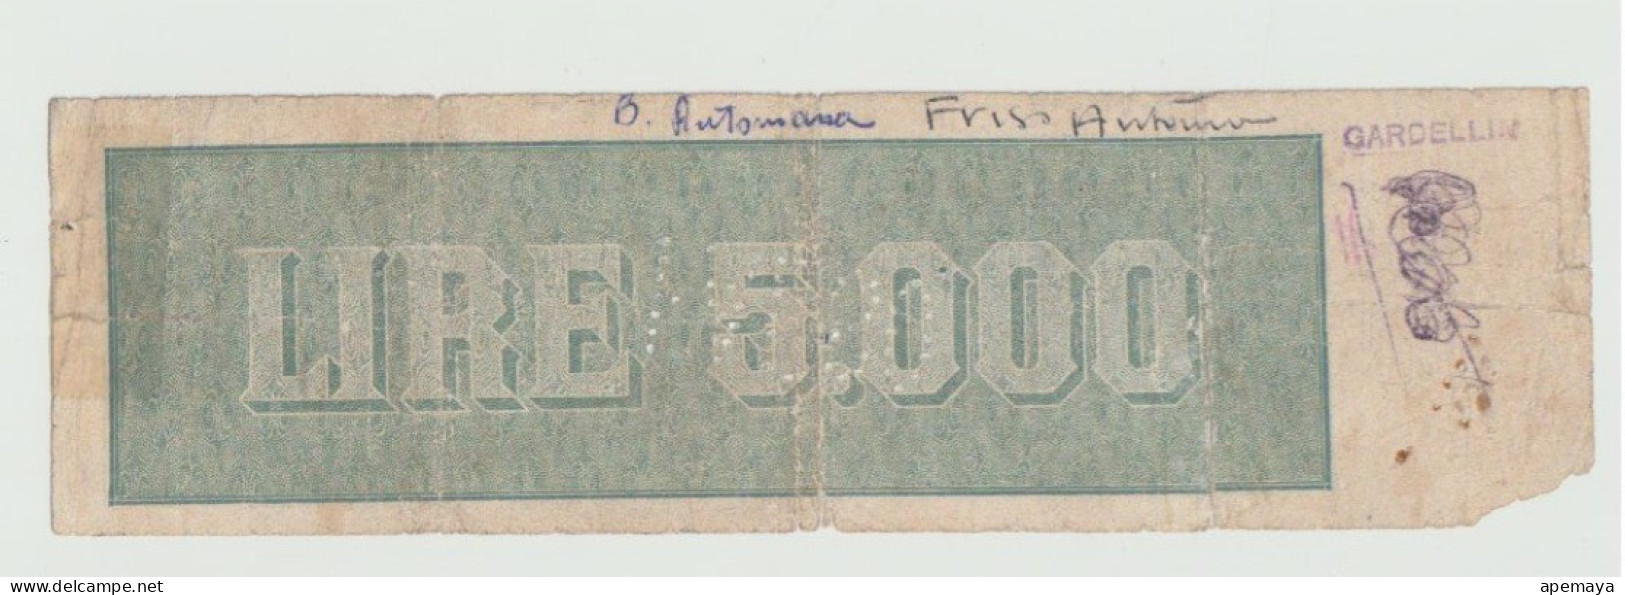 FALSO D'EPOCA. 5000 LIRE REPUBBLICA. 22/11/1947. DATA DI FANTASIA. - [ 8] Fictifs & Specimens